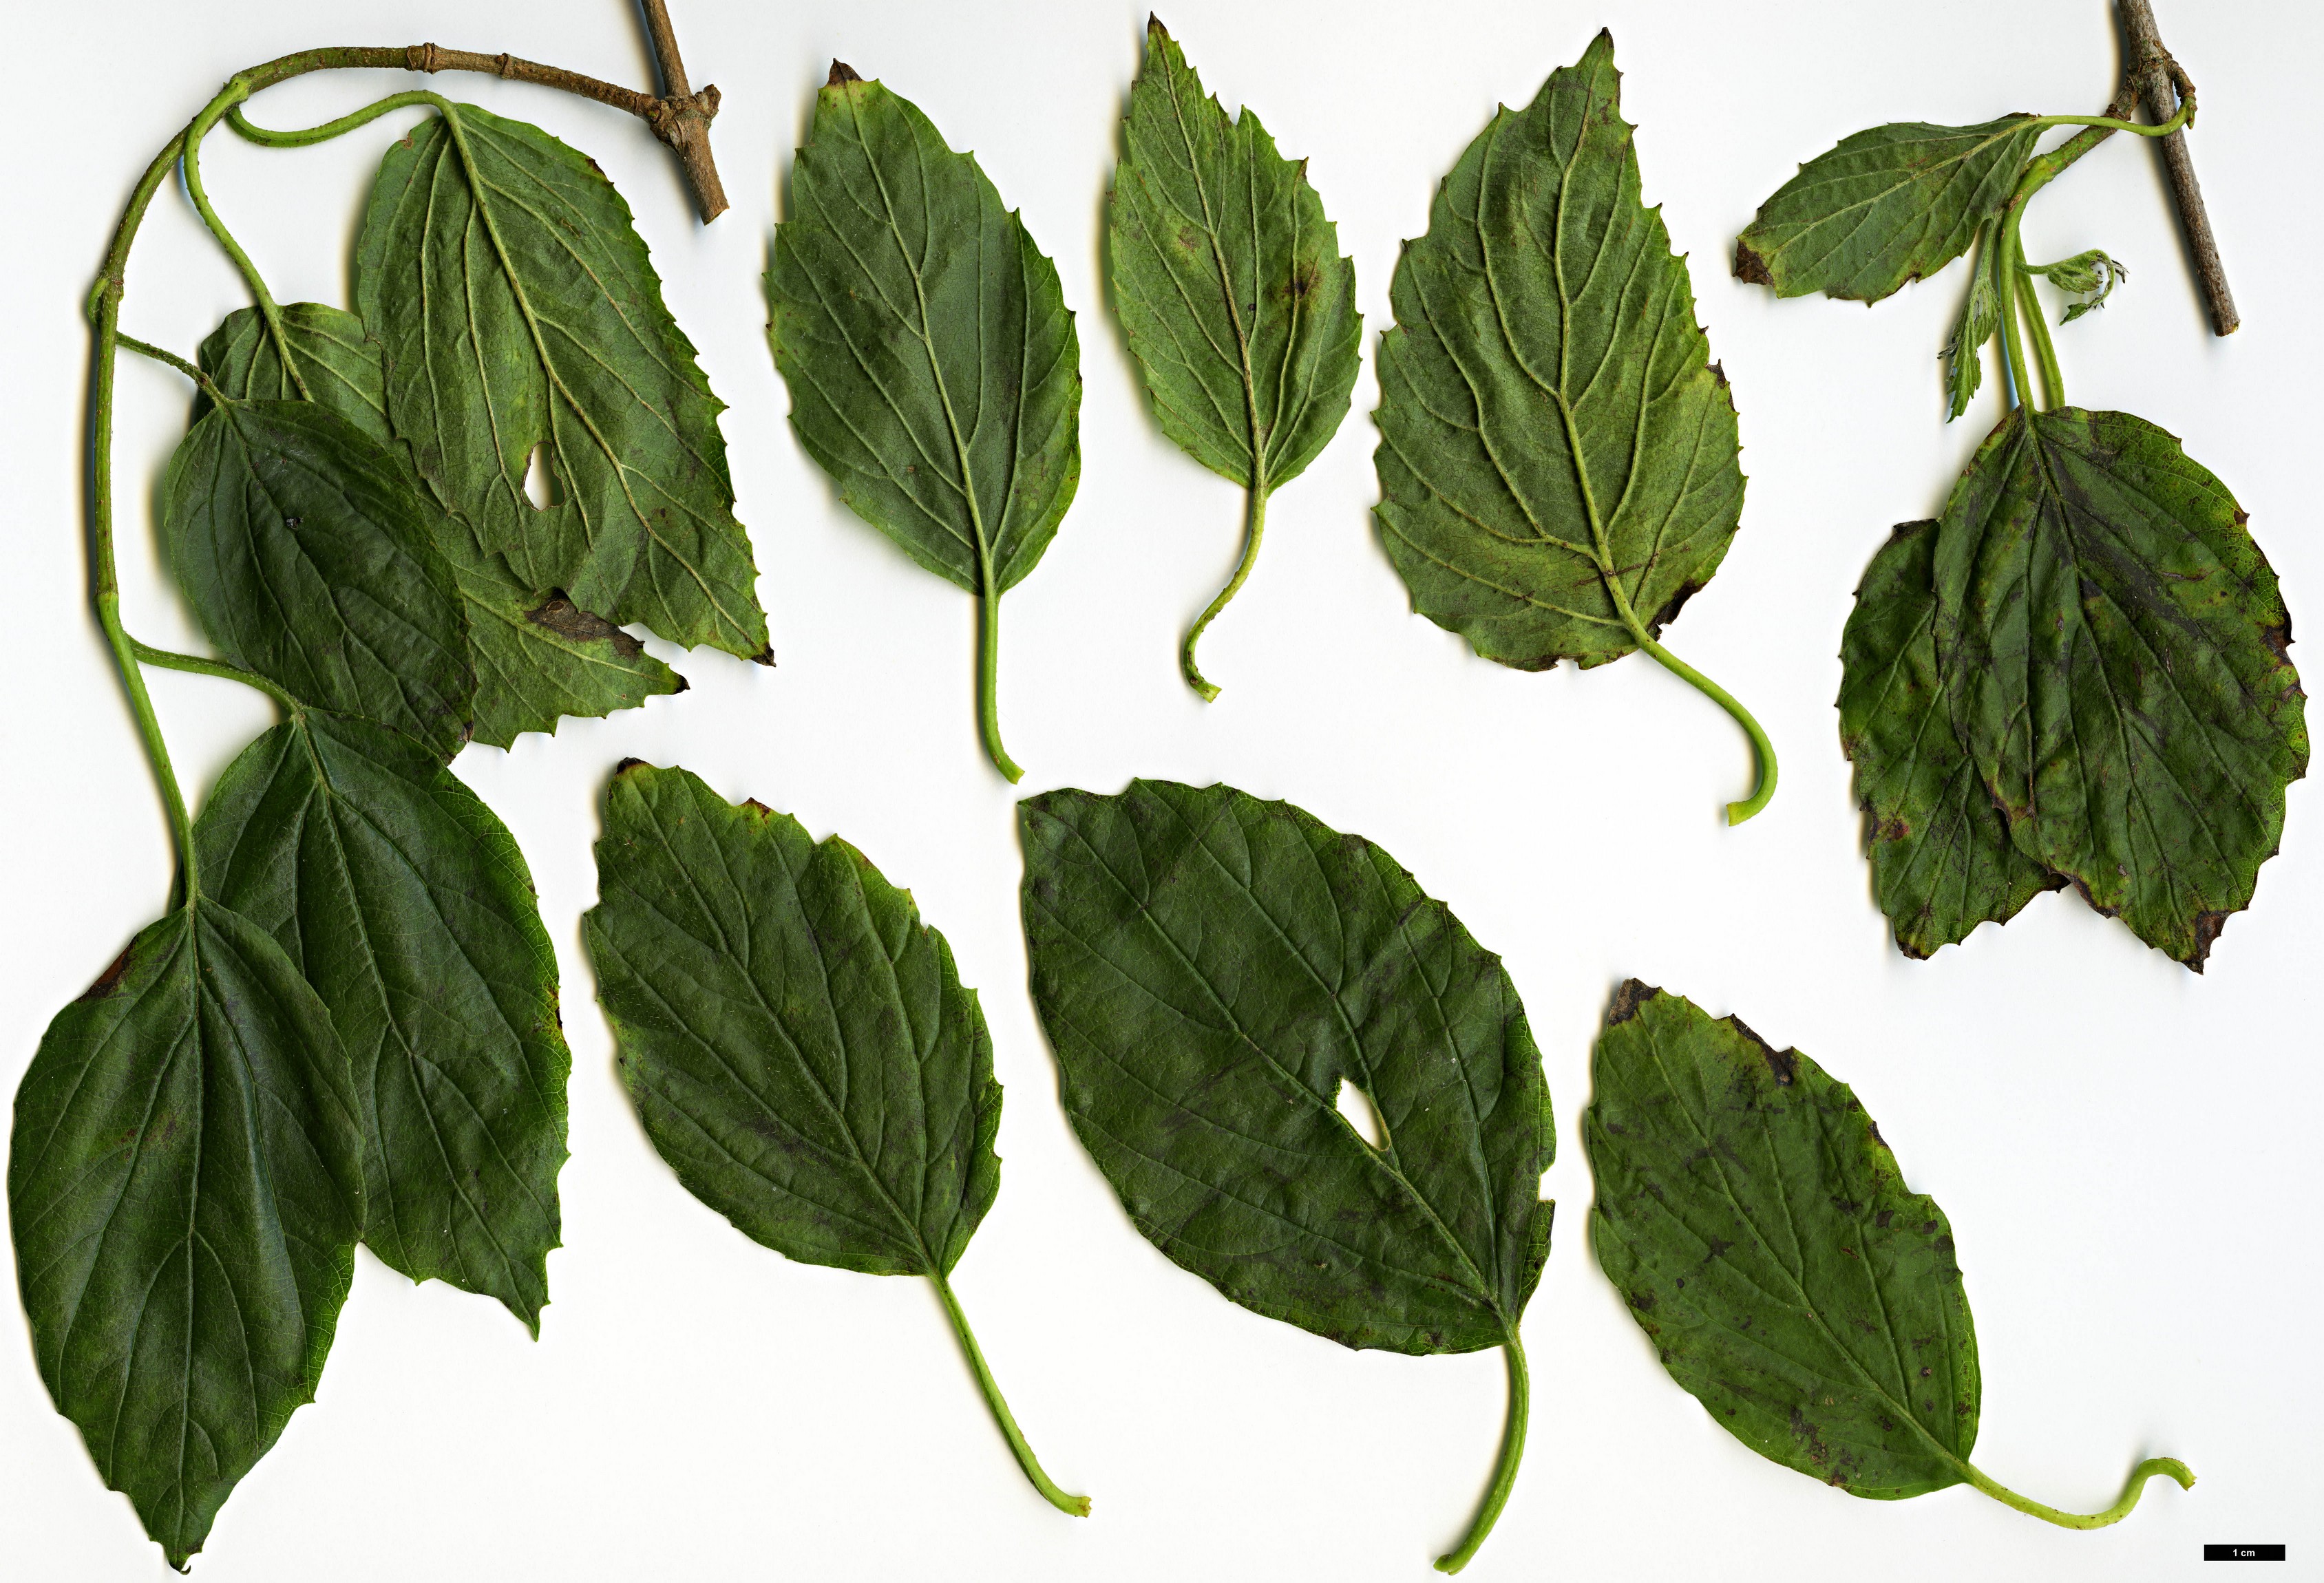 High resolution image: Family: Adoxaceae - Genus: Viburnum - Taxon: dentatum